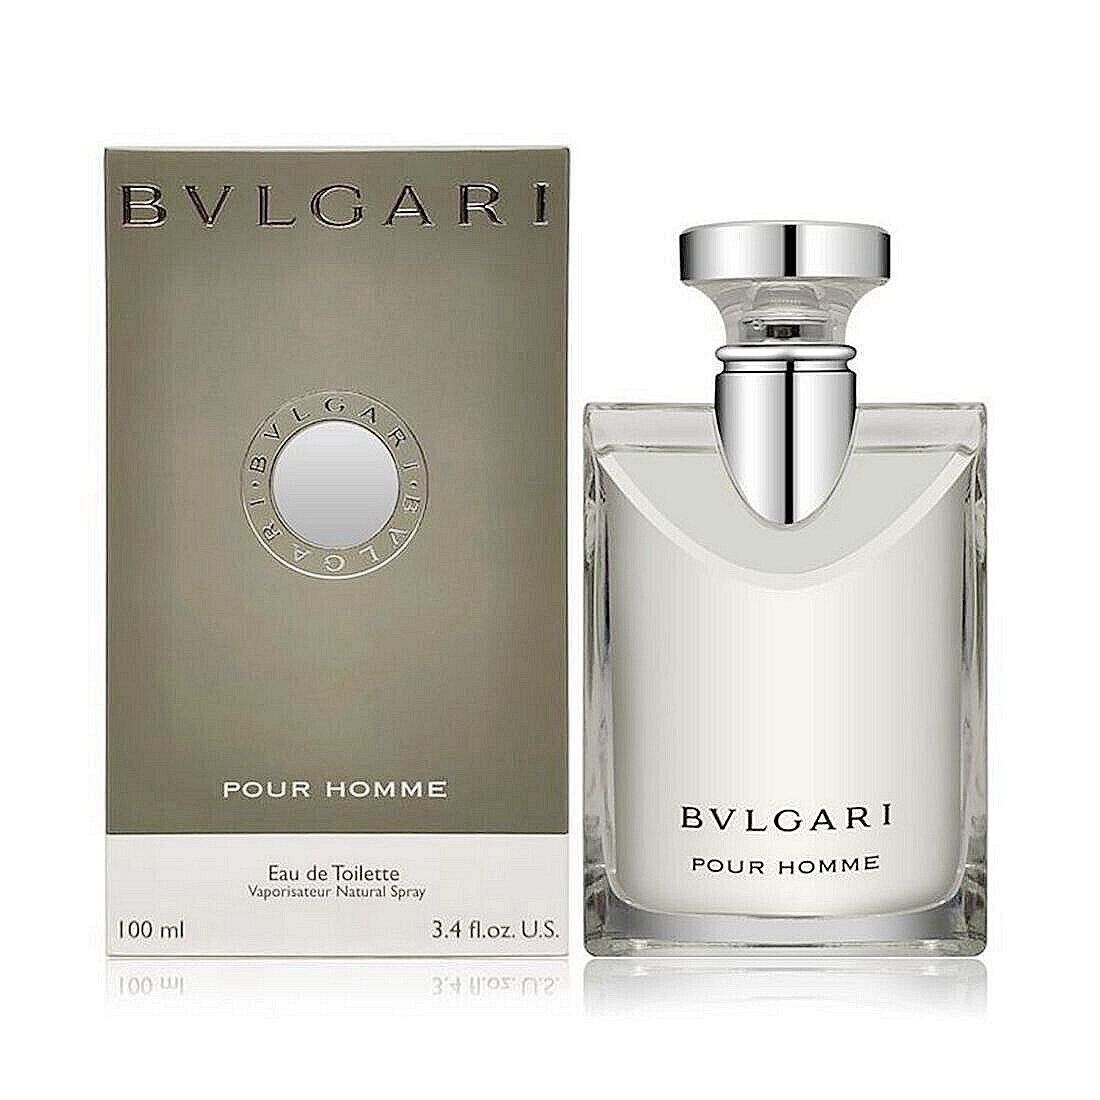 Bvlgari Pour Homme Men's Fragrances Eau de Toilette EDT Perfume 3.4 oz/100ml